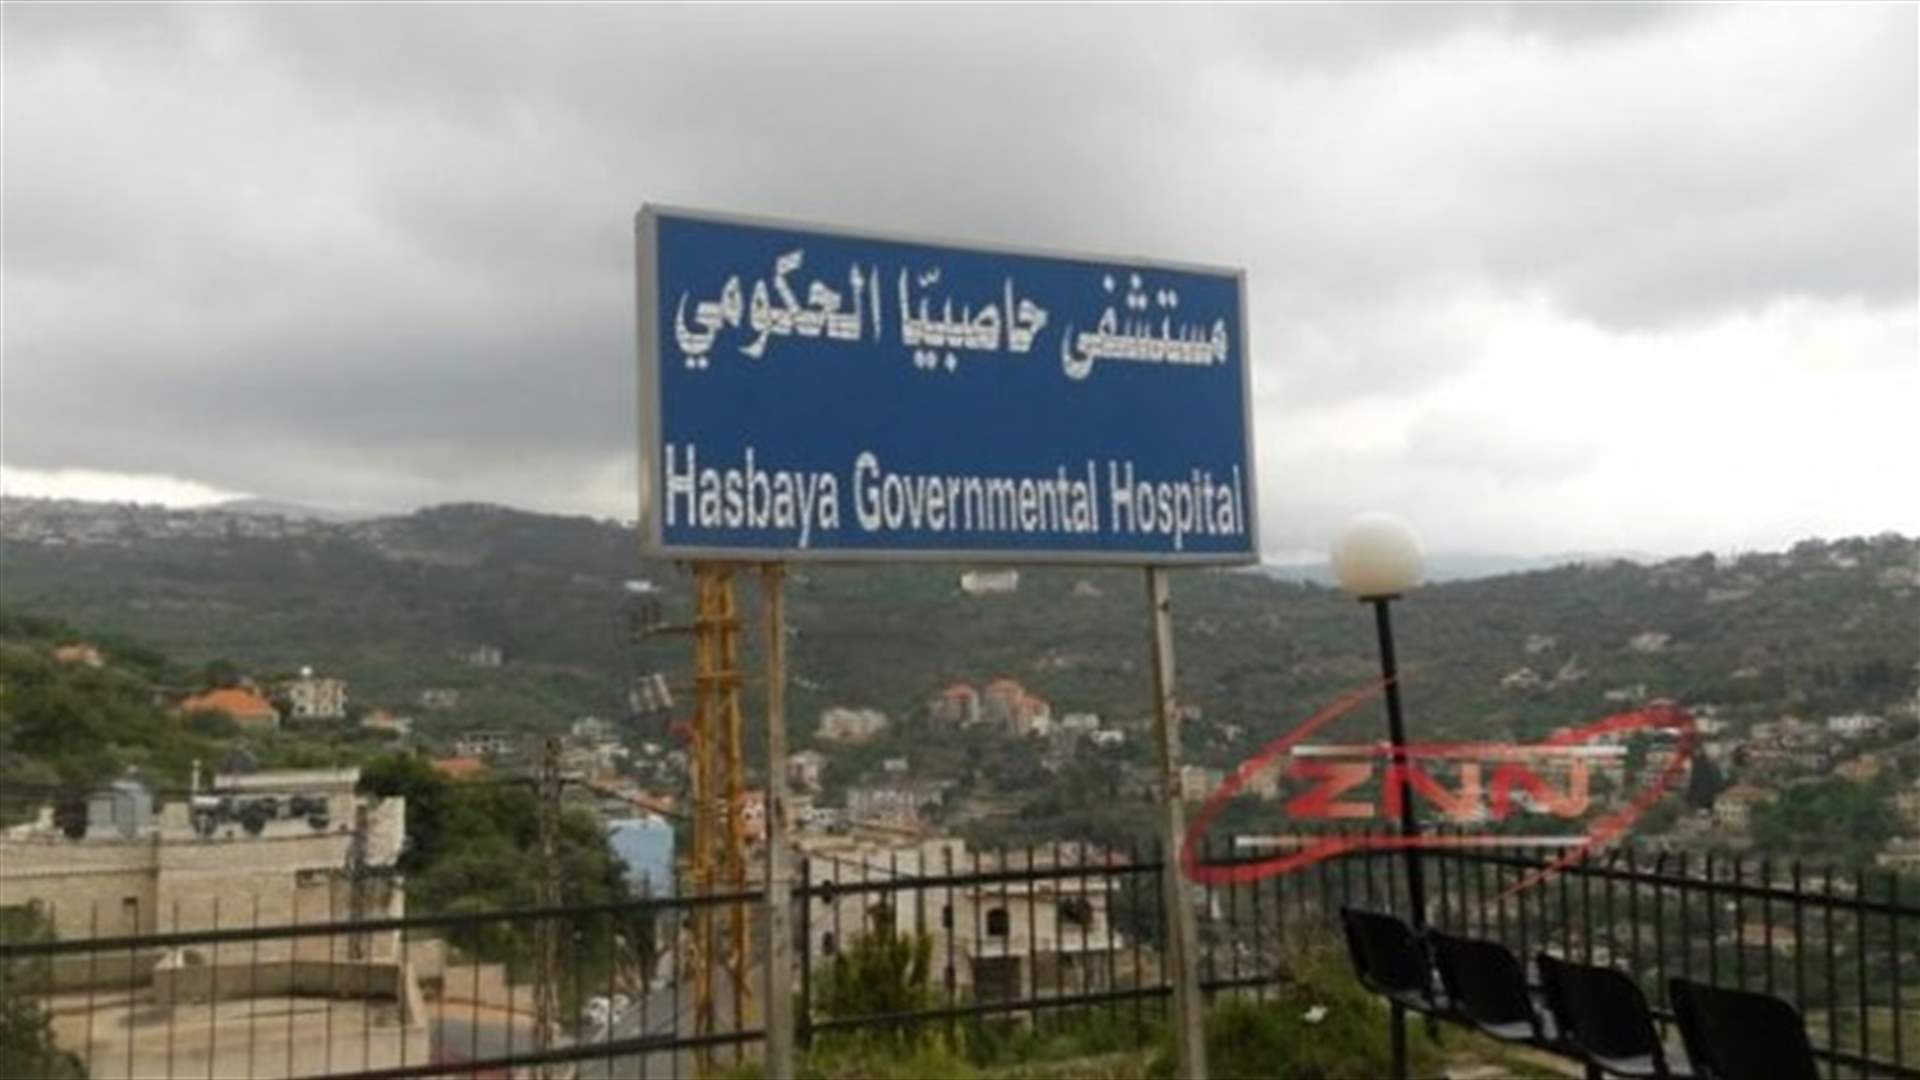 ادارة مستشفى حاصبيا الحكومي تعلن منع الزيارات بشكل كامل